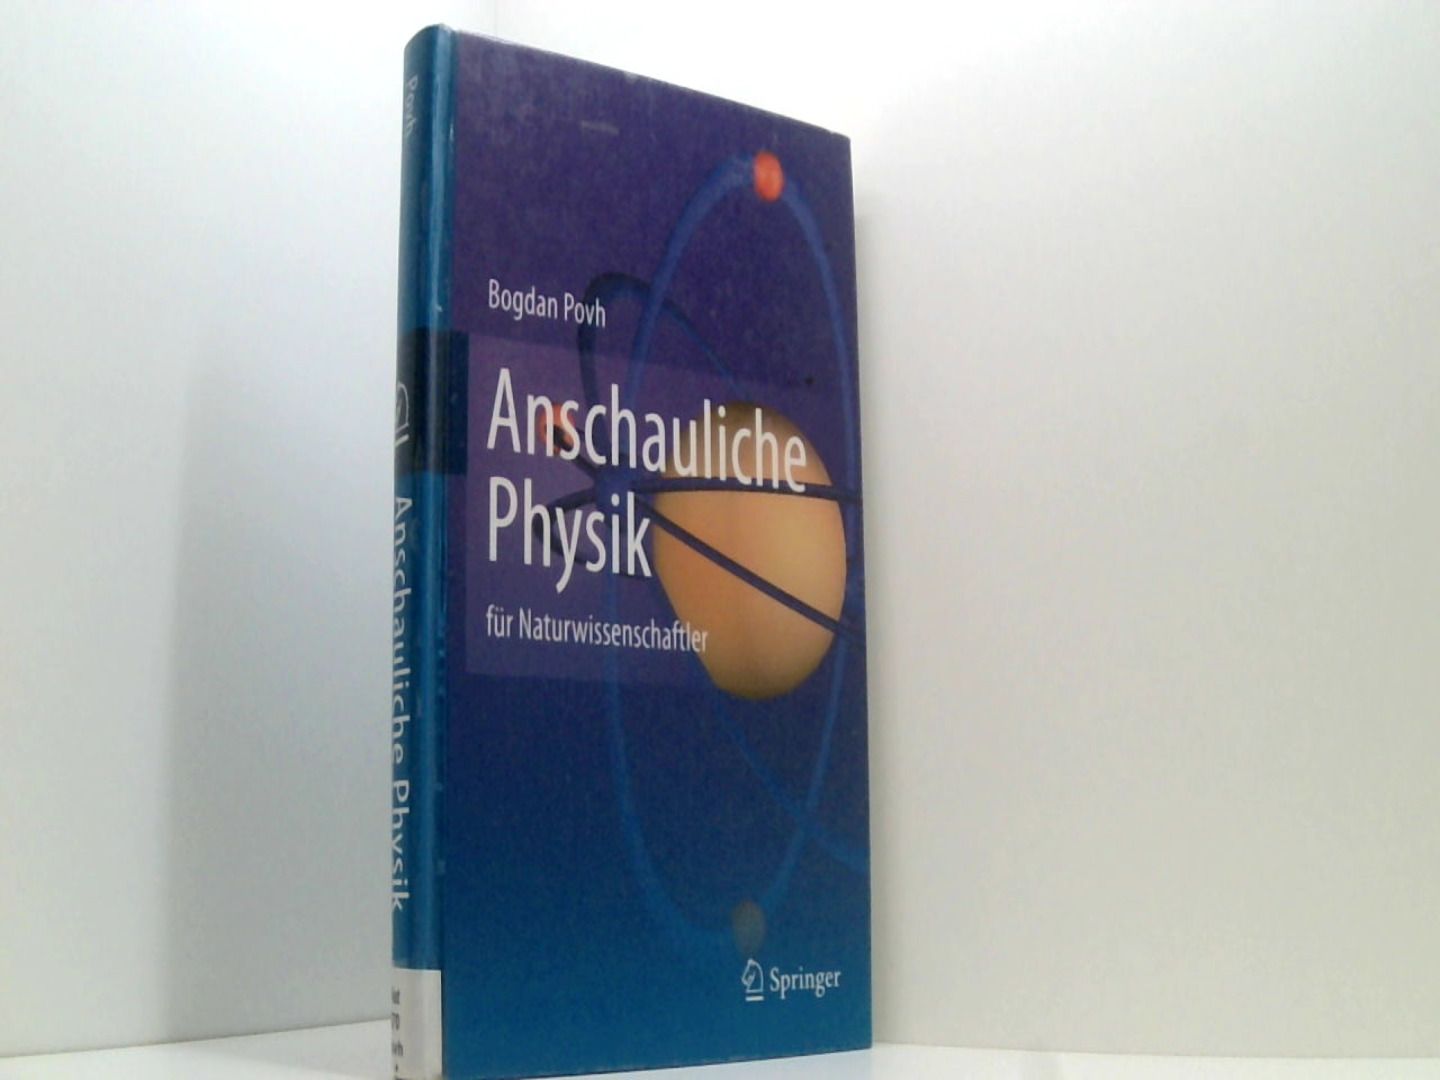 Anschauliche Physik: für Naturwissenschaftler - Povh, Bogdan